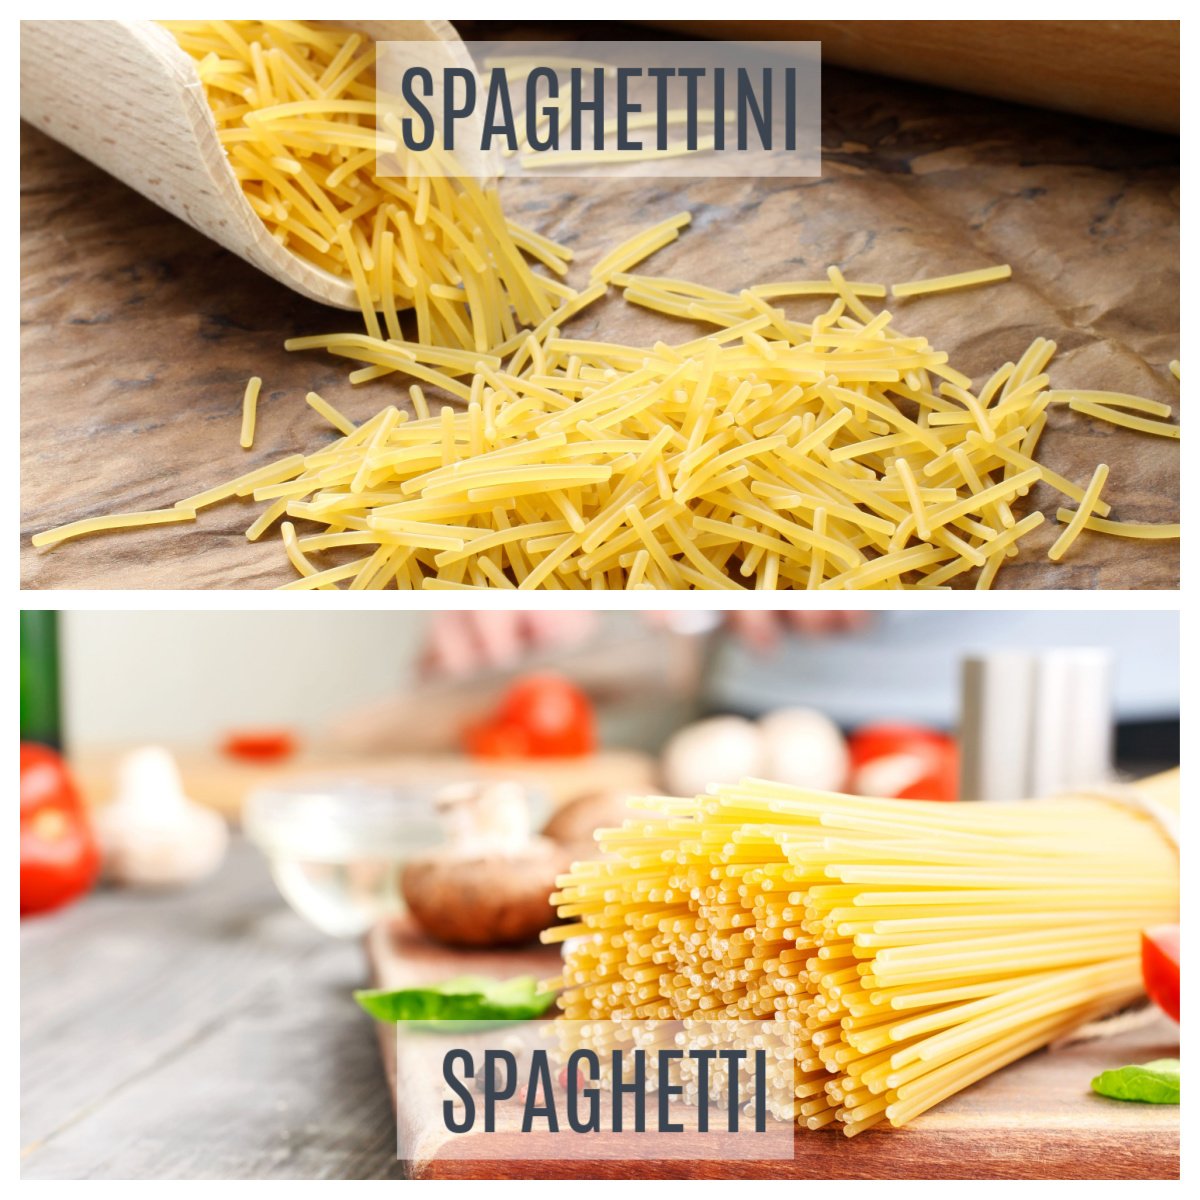 spaghettini vs spaghetti